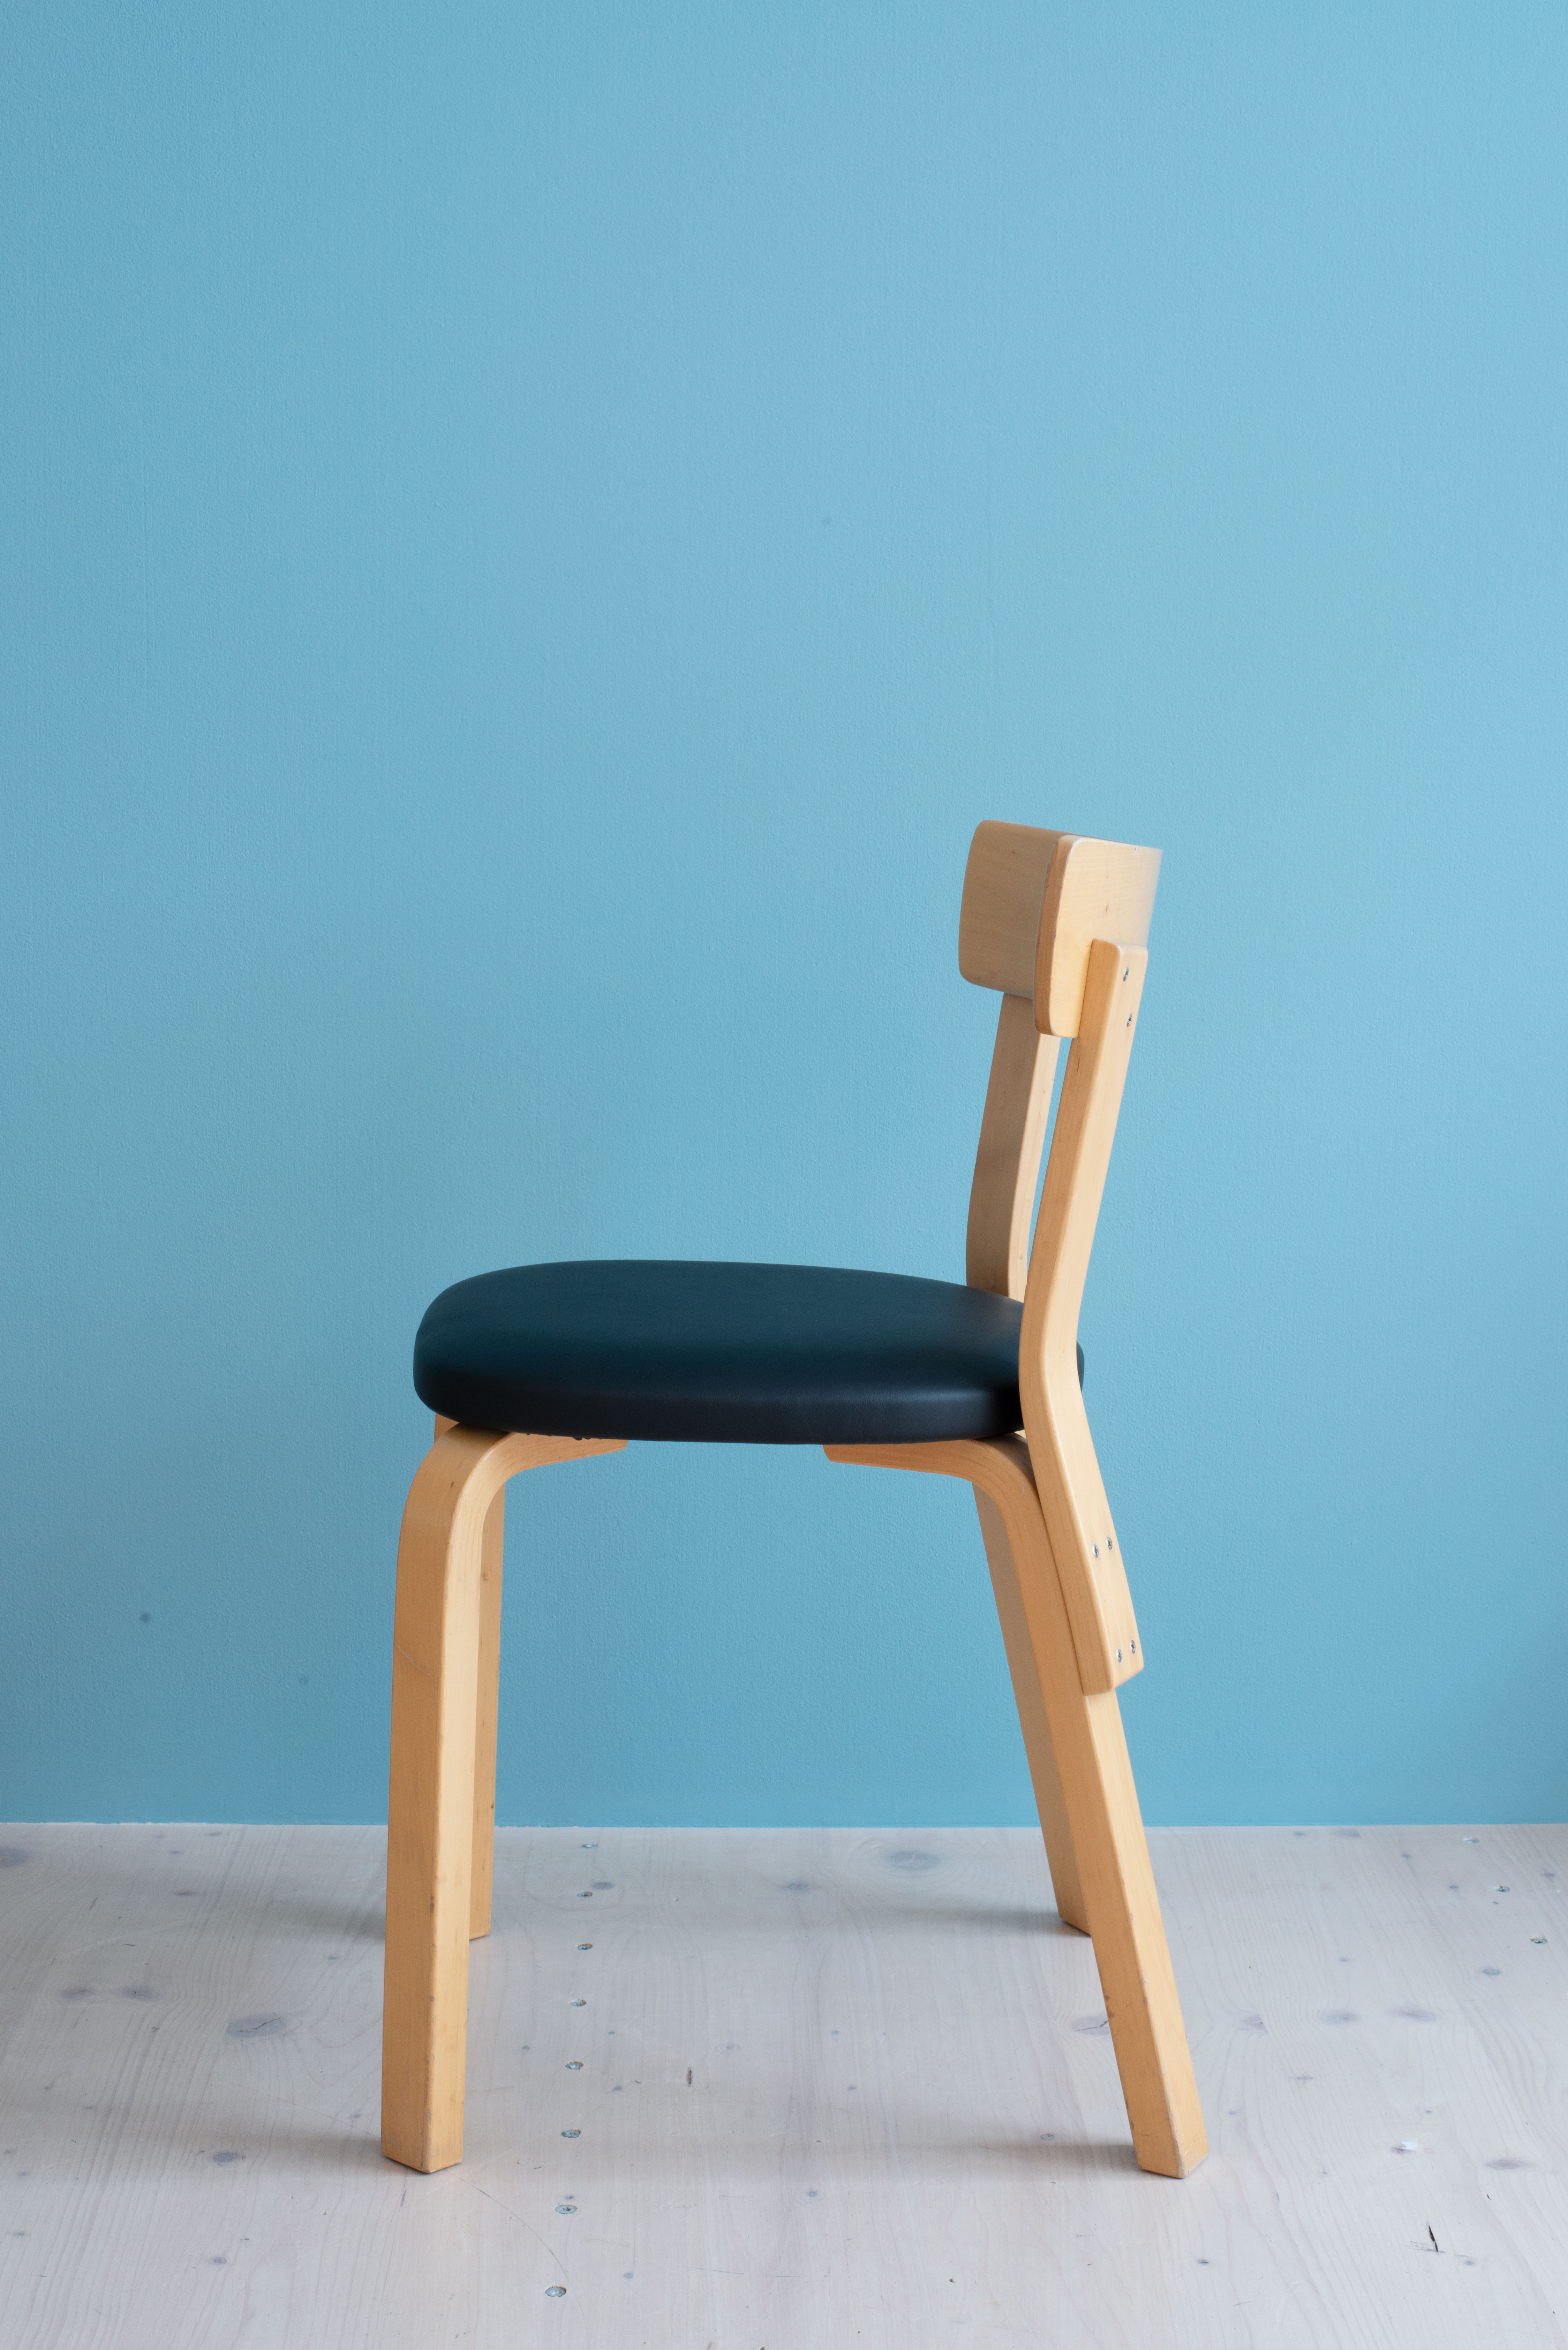 Alvar-Aalto-Model-69-Chair-heyday-möbel-Switzerland-9812